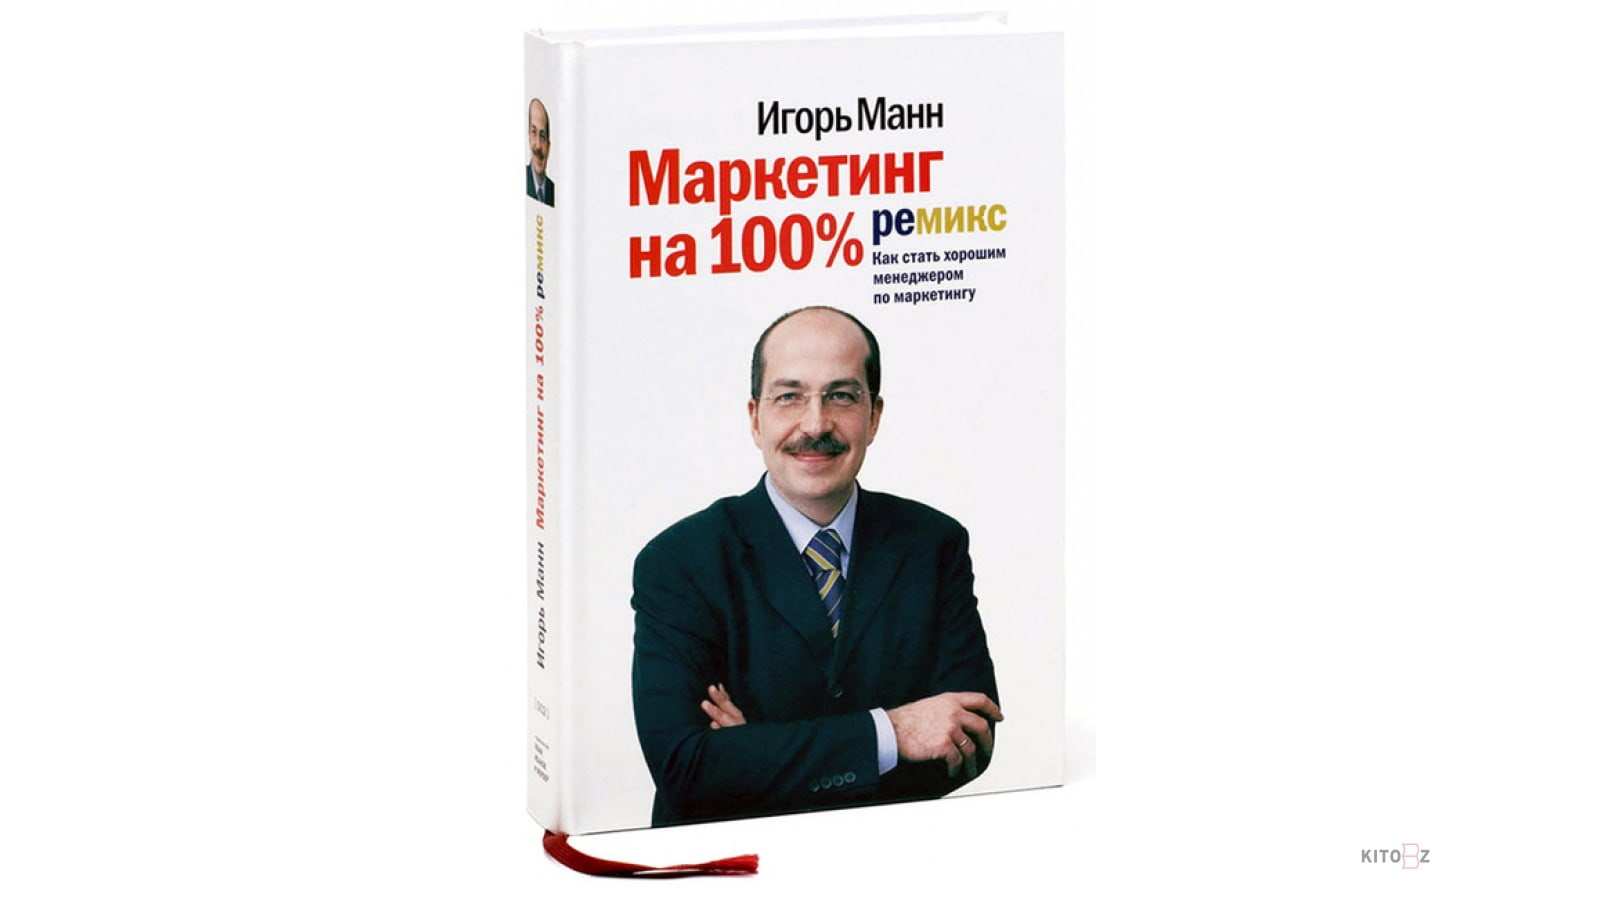 книга «Маркетинг на 100%: ремикс», Игоря Манна